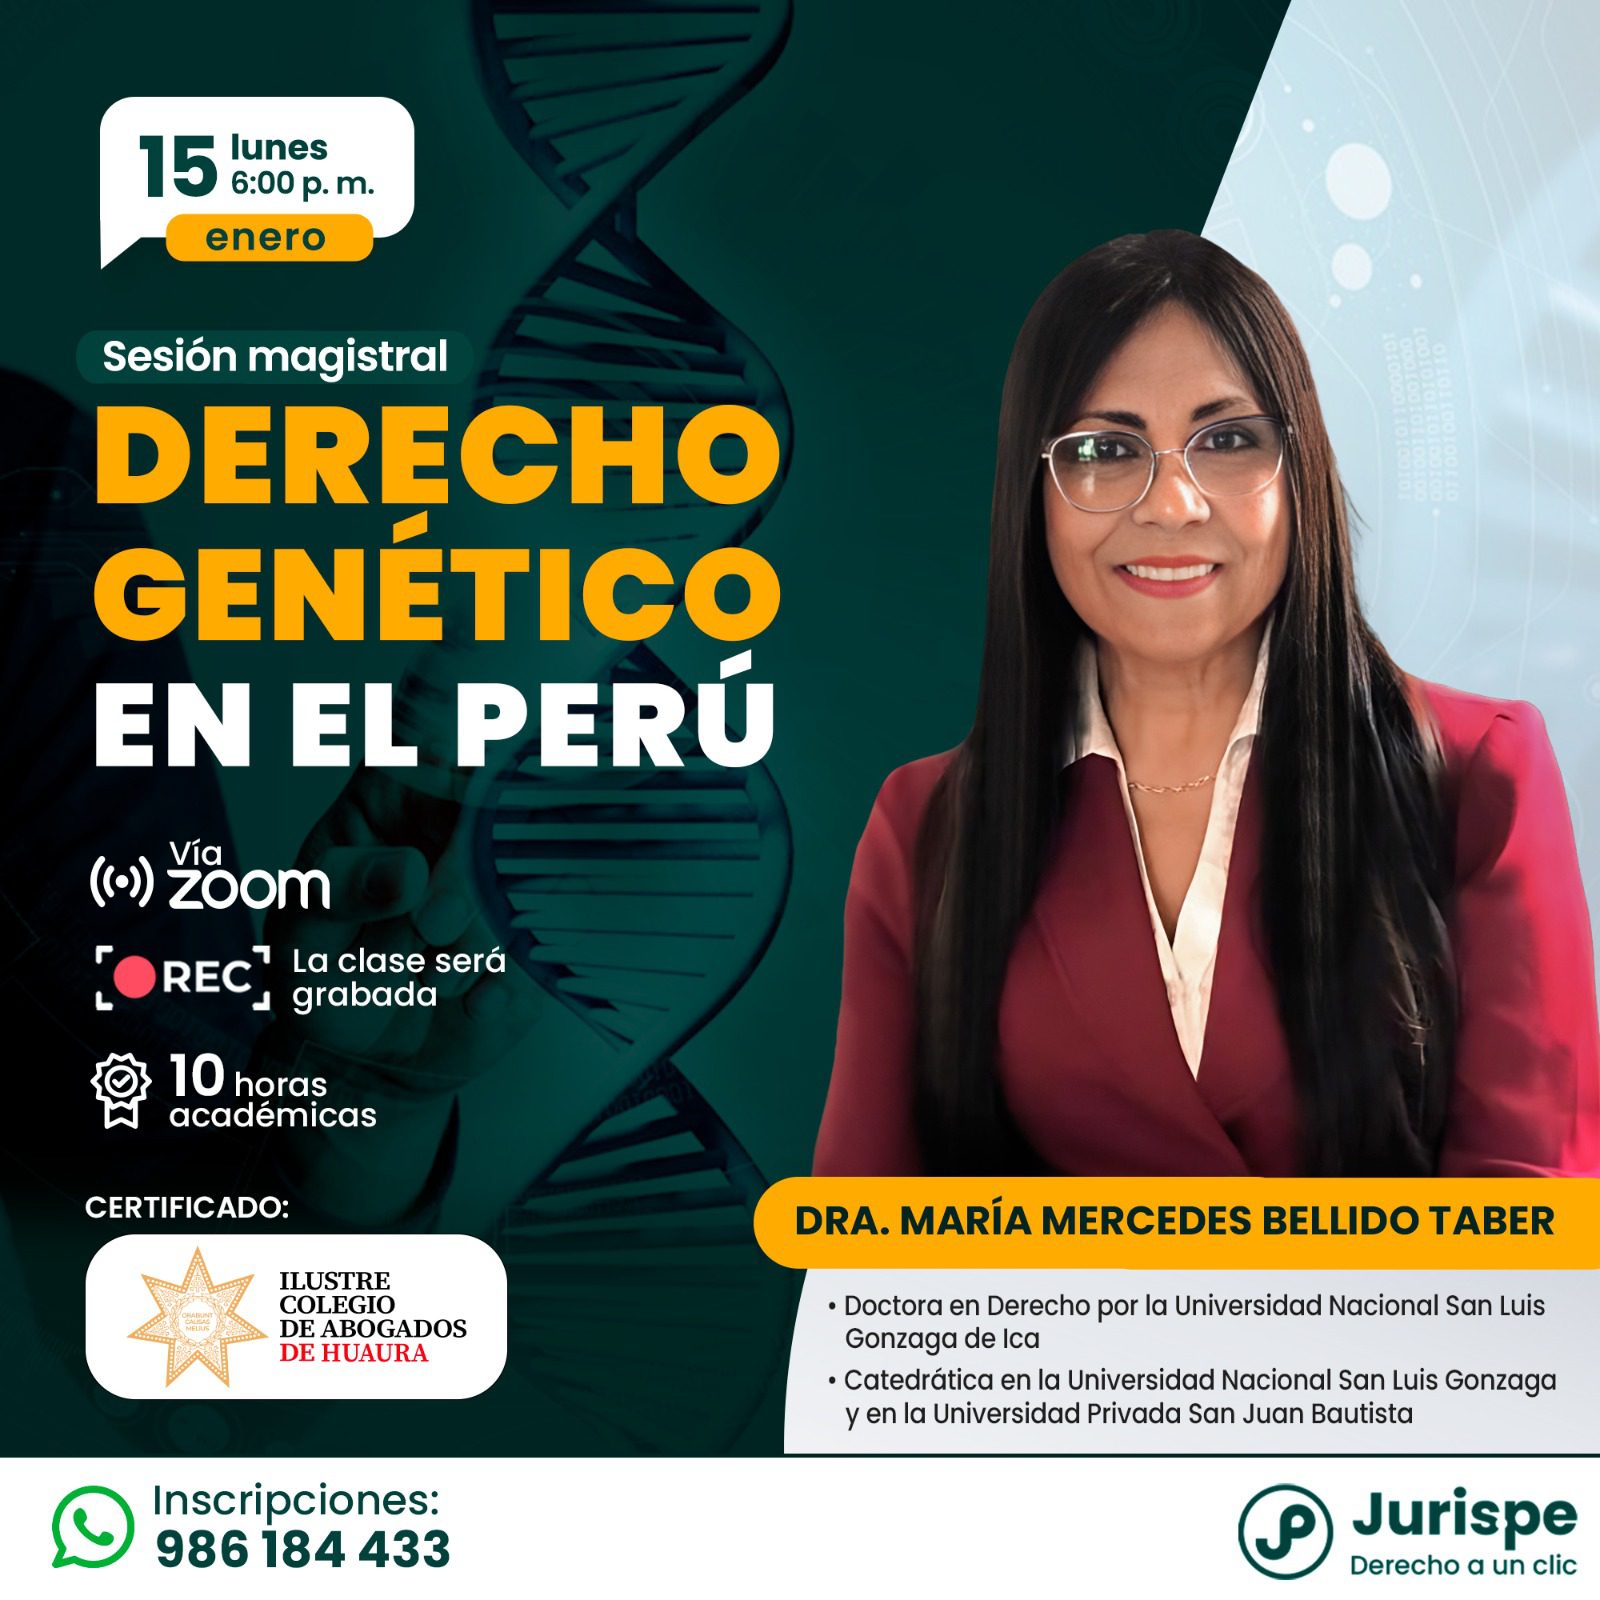 [VÍDEO] Sesión magistral gratuita sobre derecho genético en el Perú. Regístrate para recibir las diapositivas